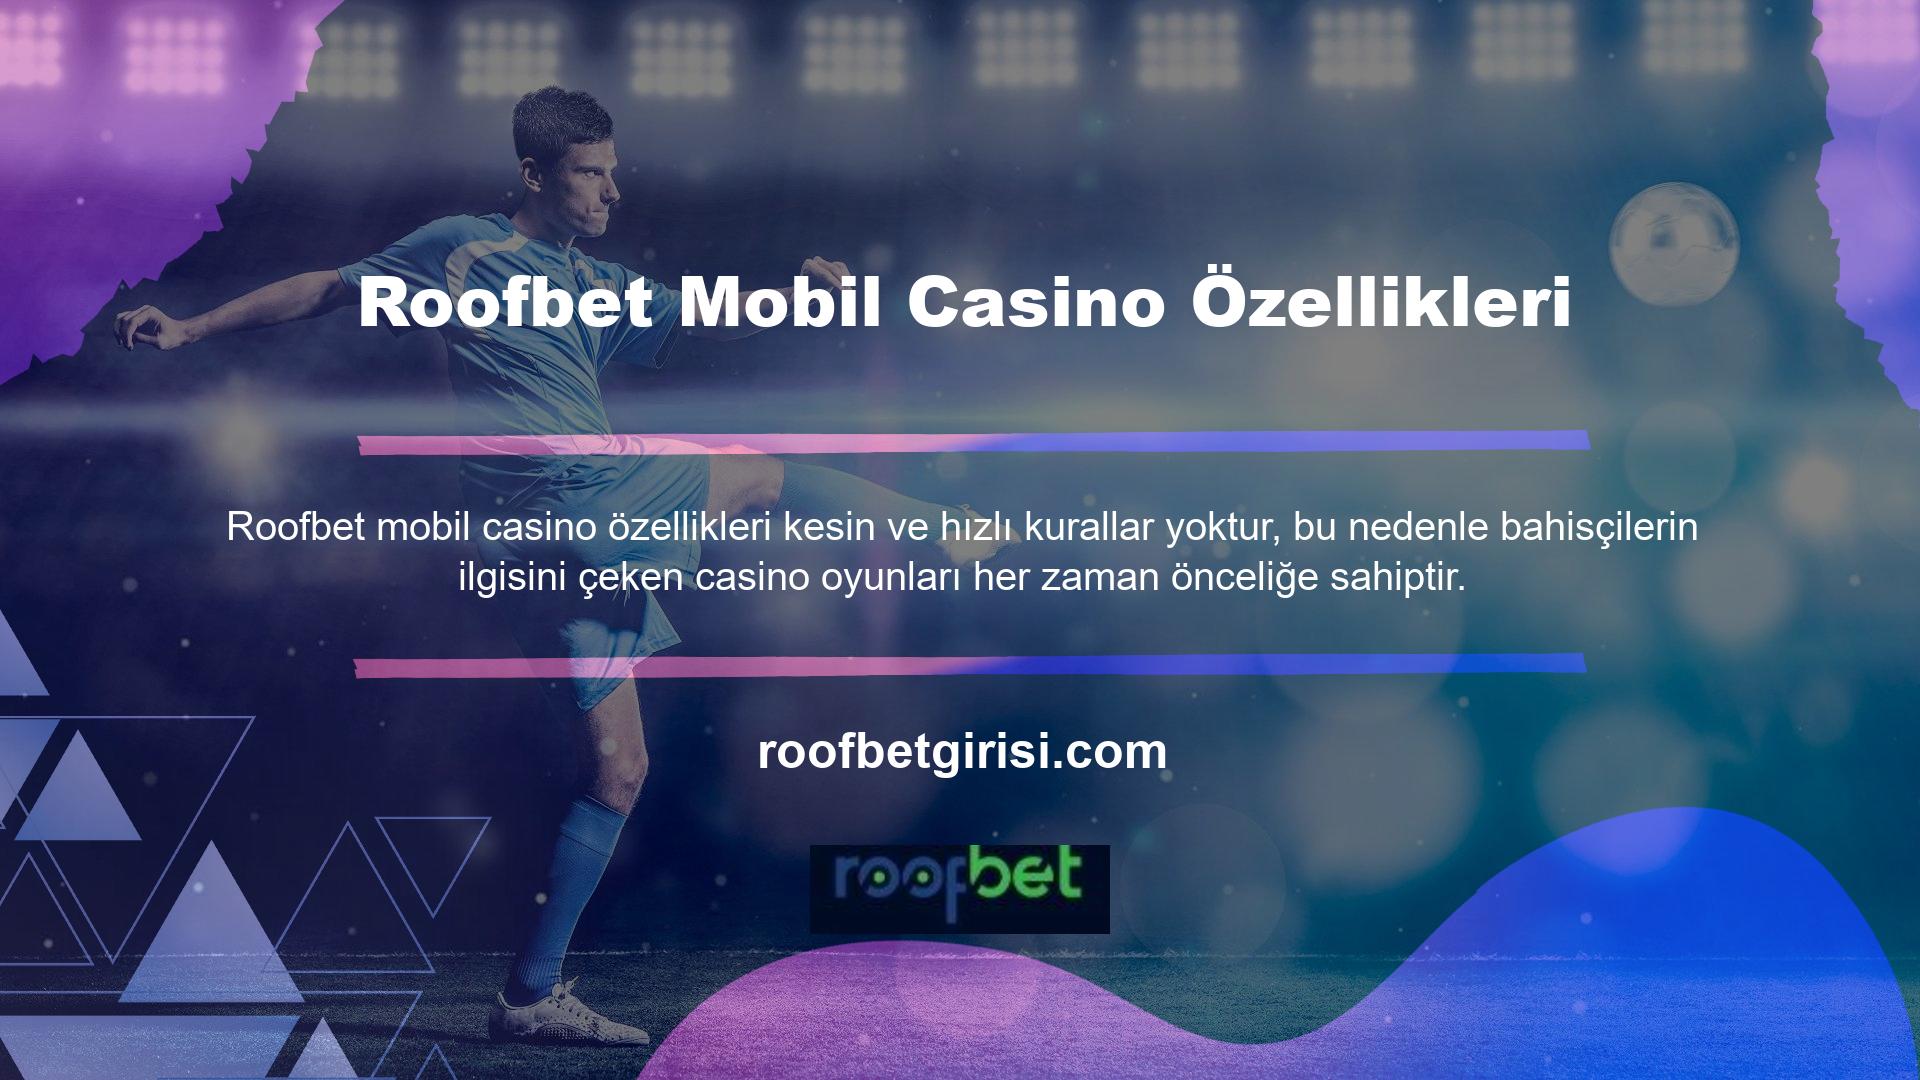 Roofbet mobil casino, akıllı cihazınızla giriş yapma olanağı sunarken, daha yüksek bahislerle yüzdeyi artırmak için mobil casino seçenekleri de sunar